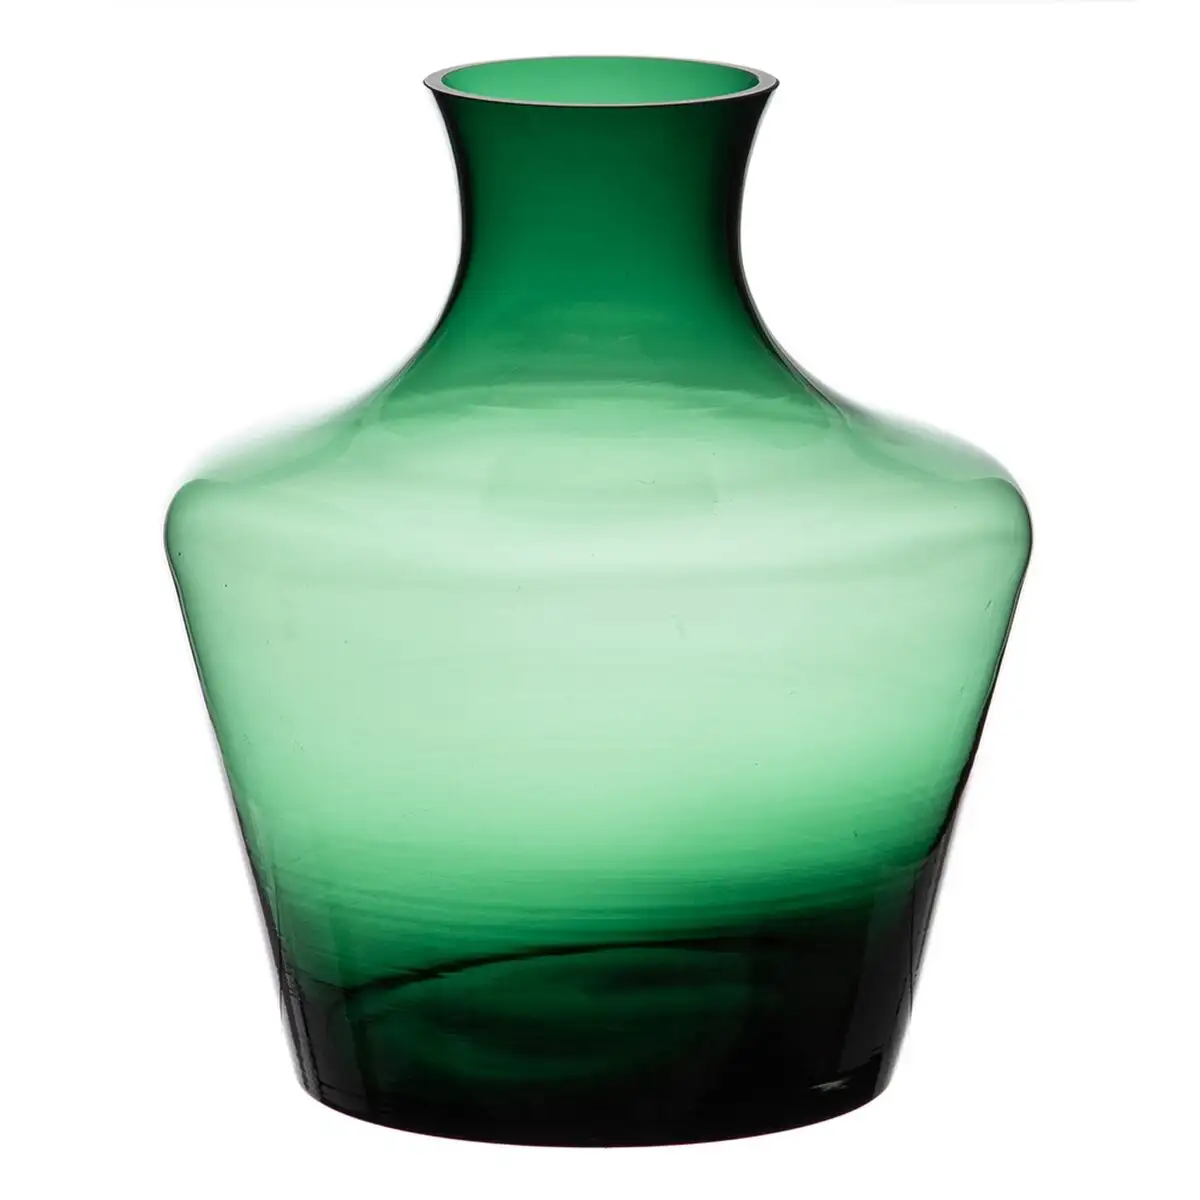 Vase 21 x 21 x 25 cm vert verre_5067. DIAYTAR SENEGAL - Votre Destinée Shopping Personnalisée. Plongez dans notre boutique en ligne et créez votre propre expérience de shopping en choisissant parmi nos produits variés.